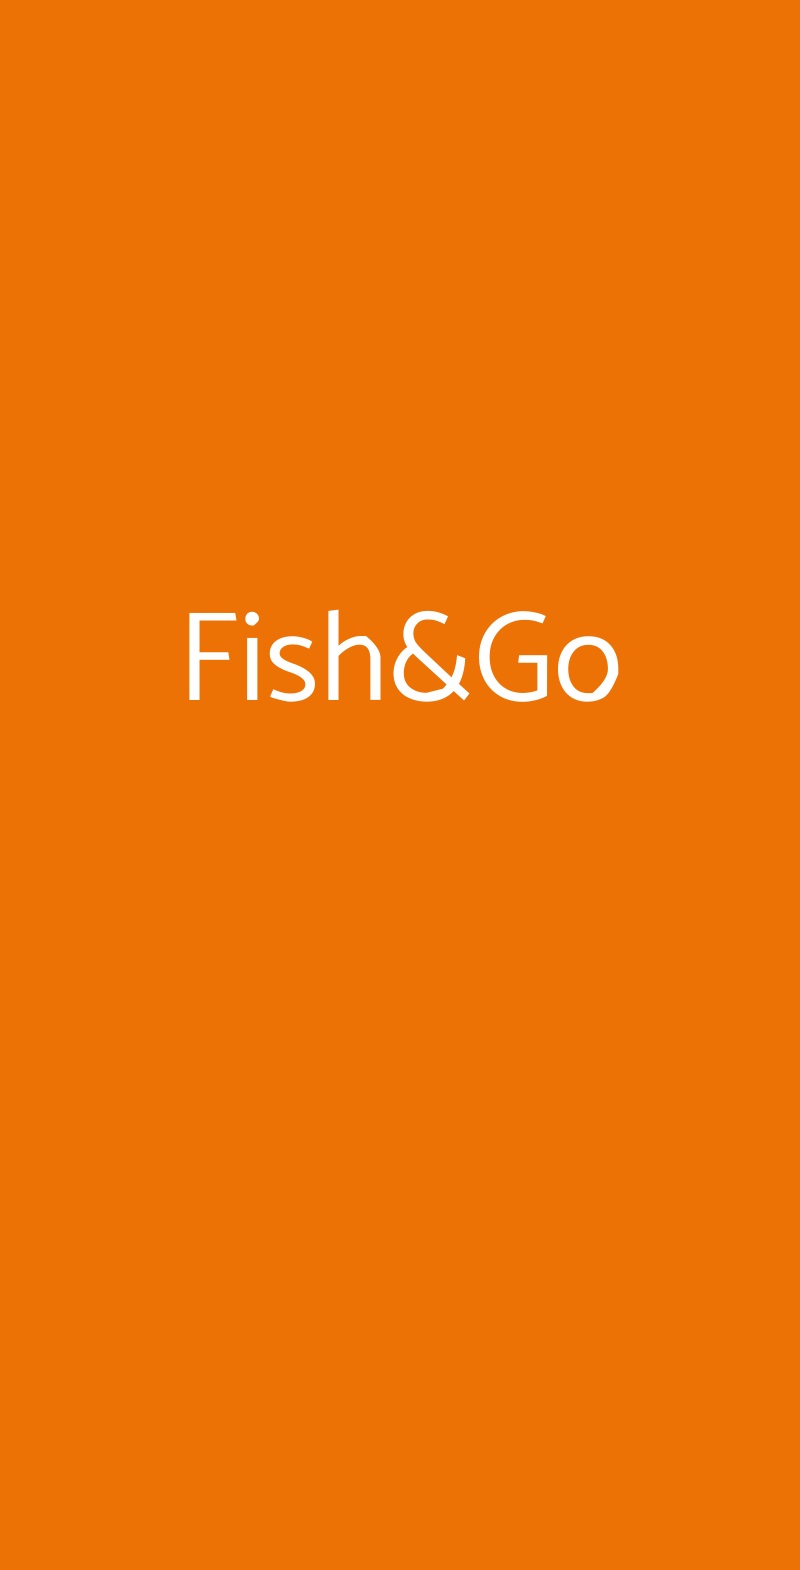 Fish&Go Roma menù 1 pagina